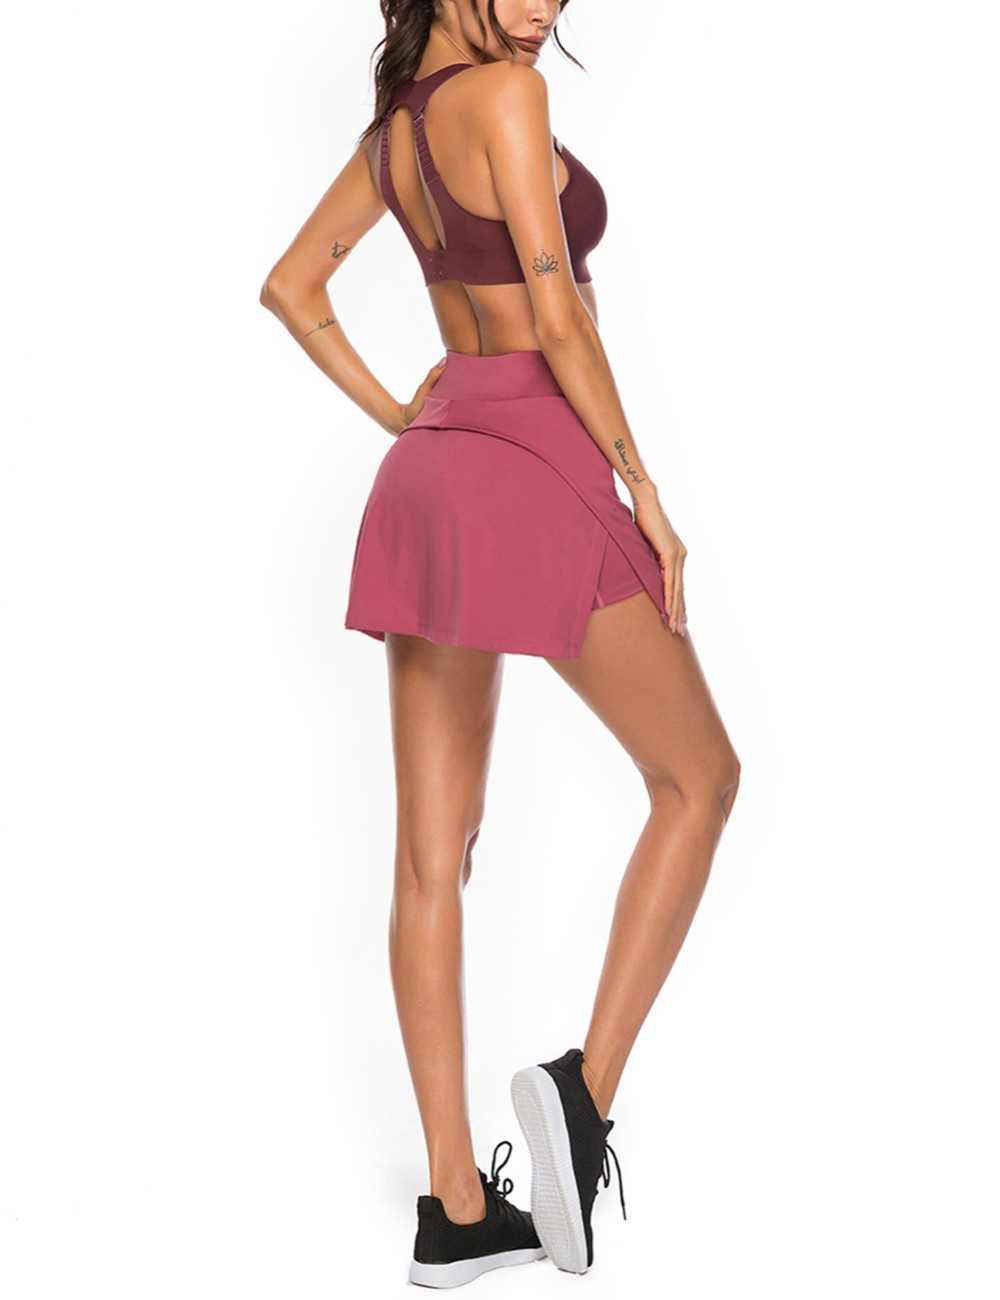 Moving Wine Red High Waist Slit Side Tennis Skirt Pocket For Female